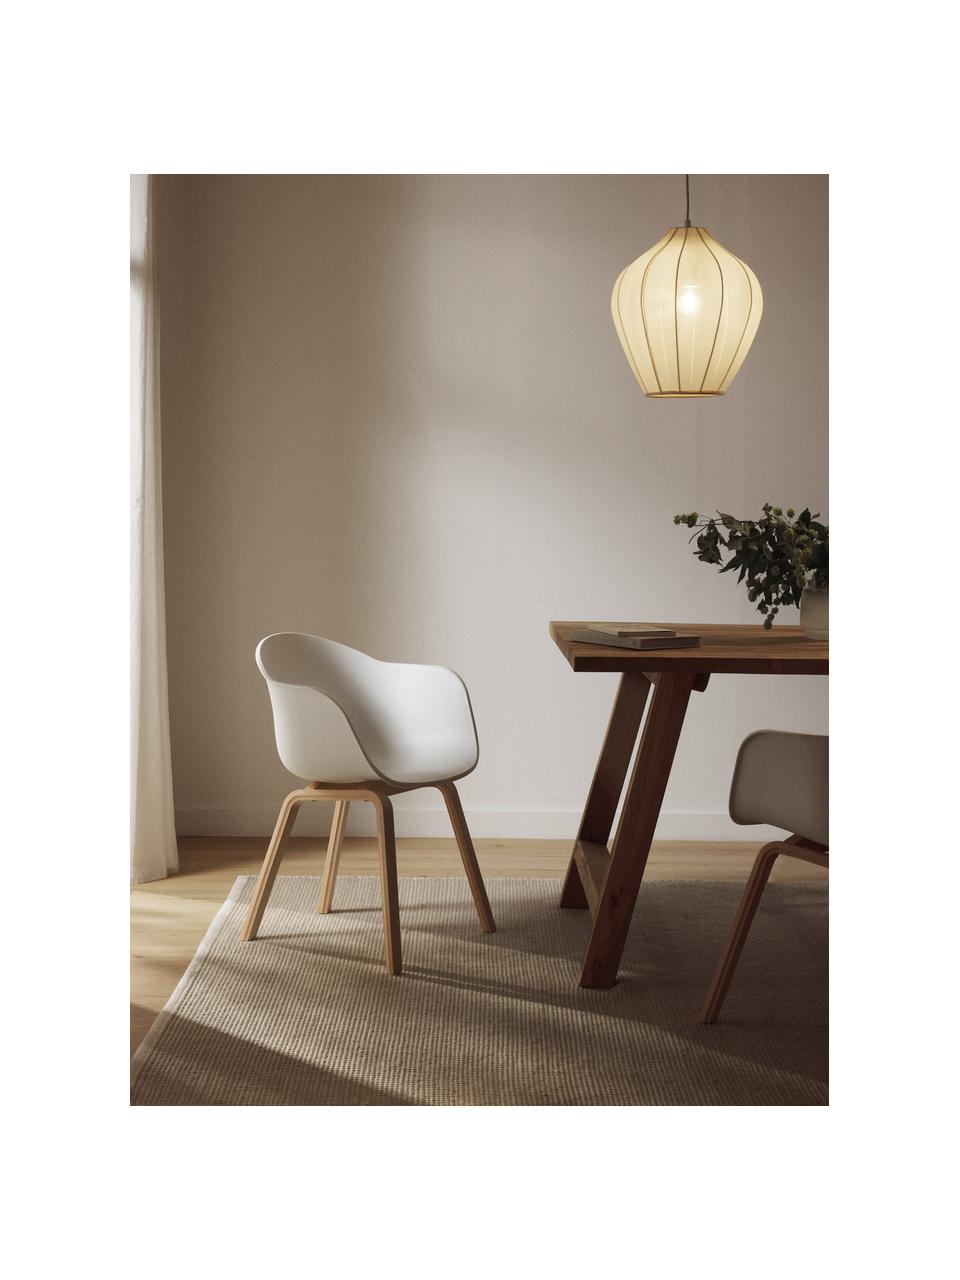 Židle s područkami s dřevěnými nohami Claire, Bílá, bukové dřevo, Š 60 cm, H 54 cm